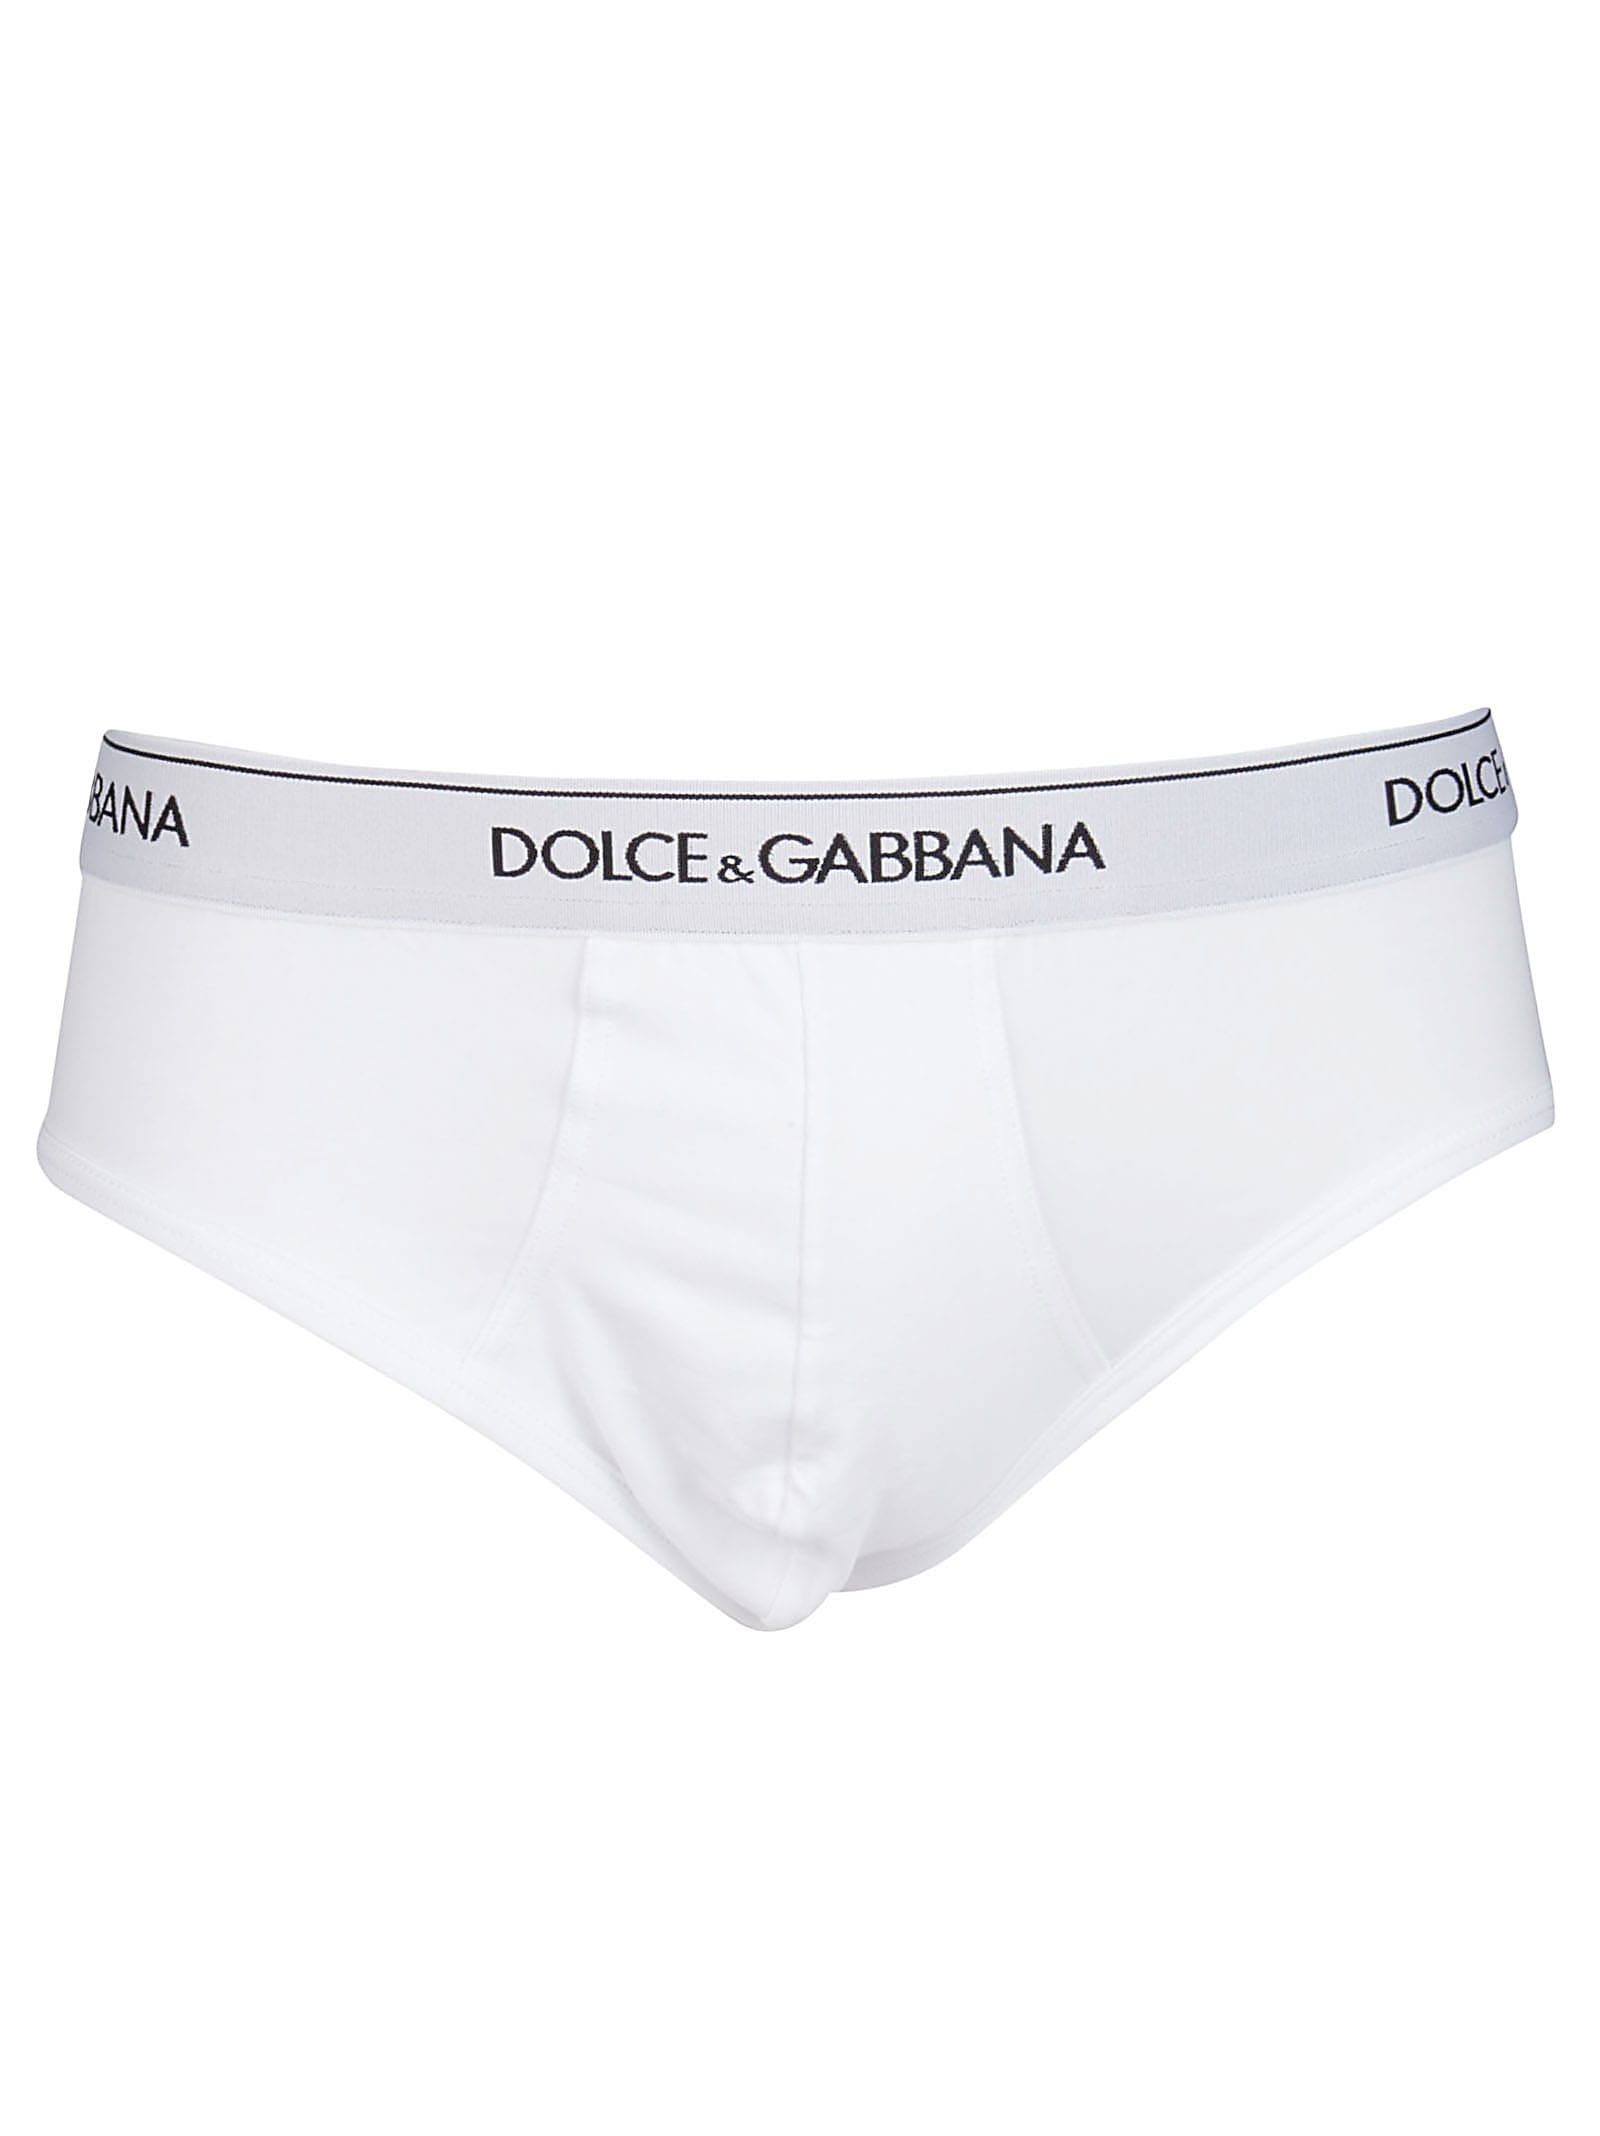 Shop Dolce & Gabbana White Cotton Briefs